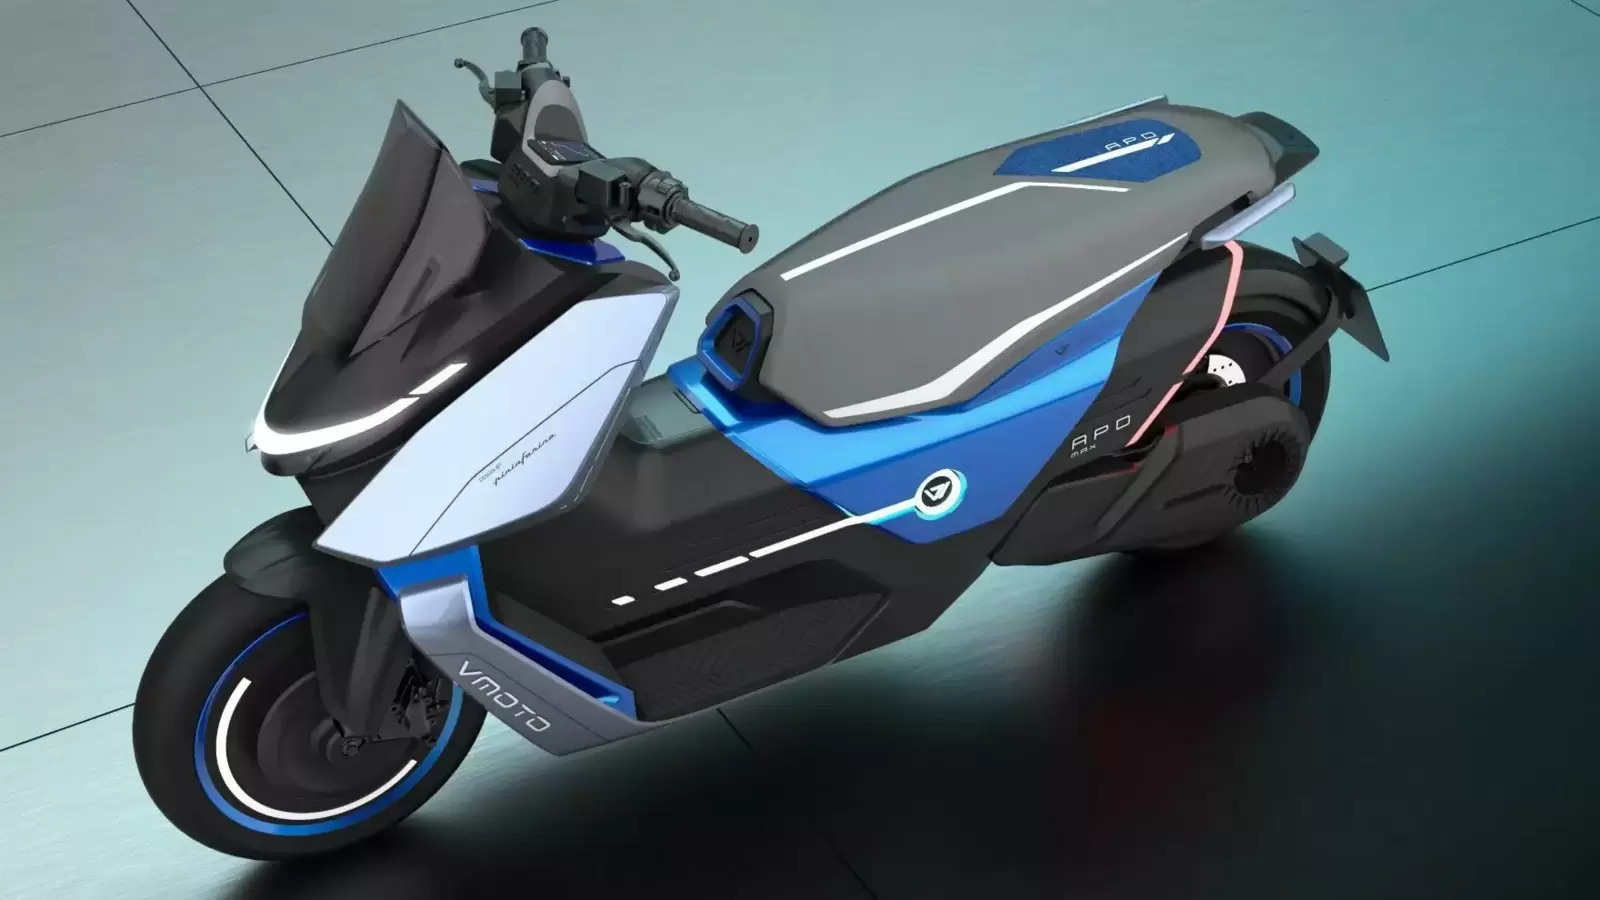 EICMA 2023: Lambretta Elettra electric scooter concept unveiled